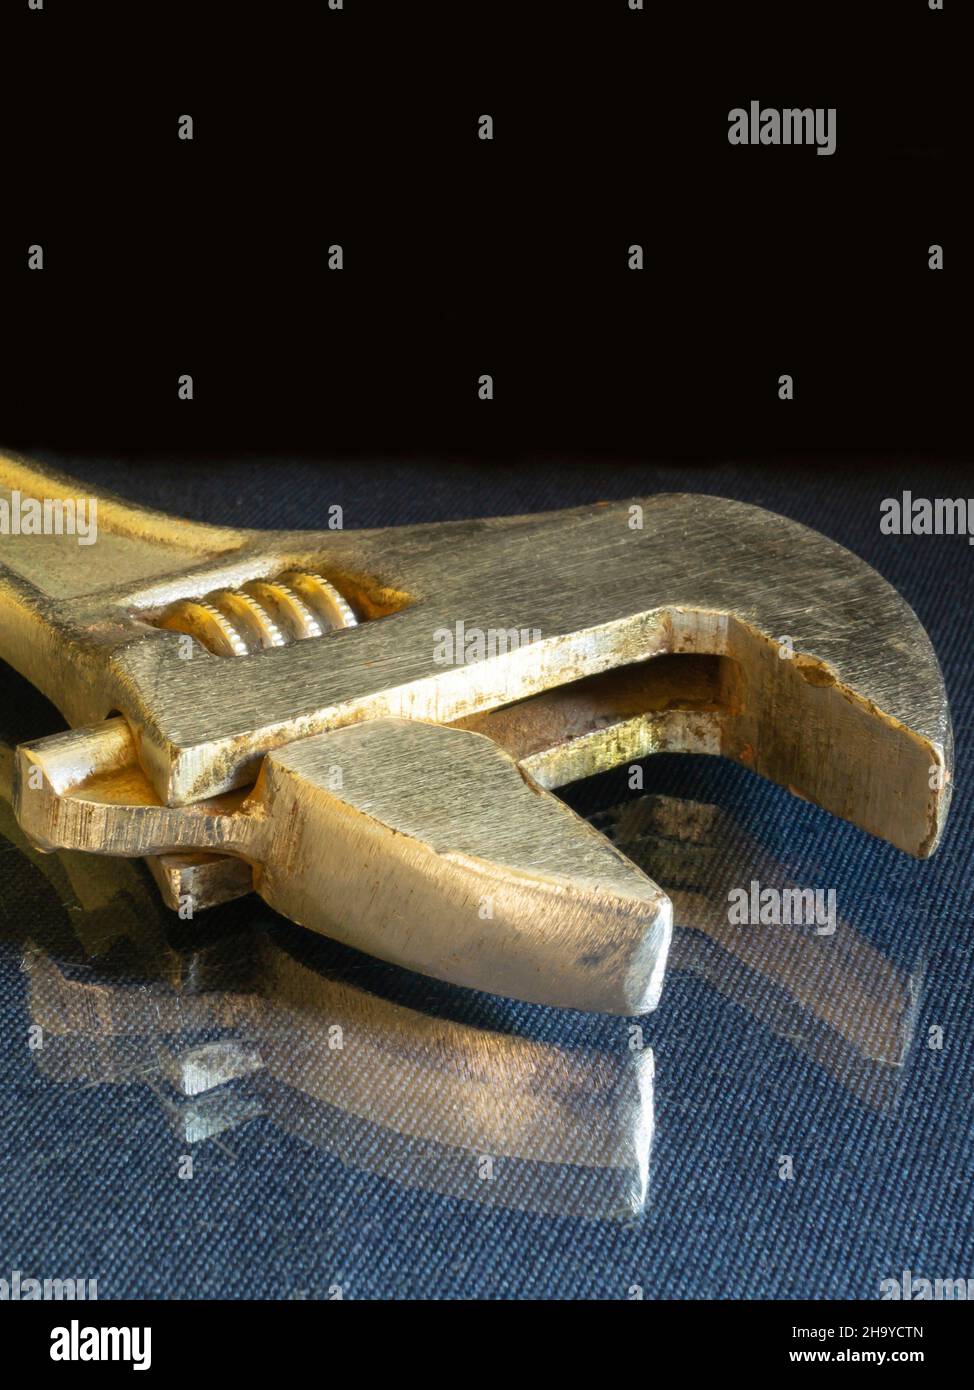 Der Schraubenschlüssel ruht auf einem Glastisch auf schwarzem Hintergrund. Das Instrument zur Befestigung der Details. Stockfoto